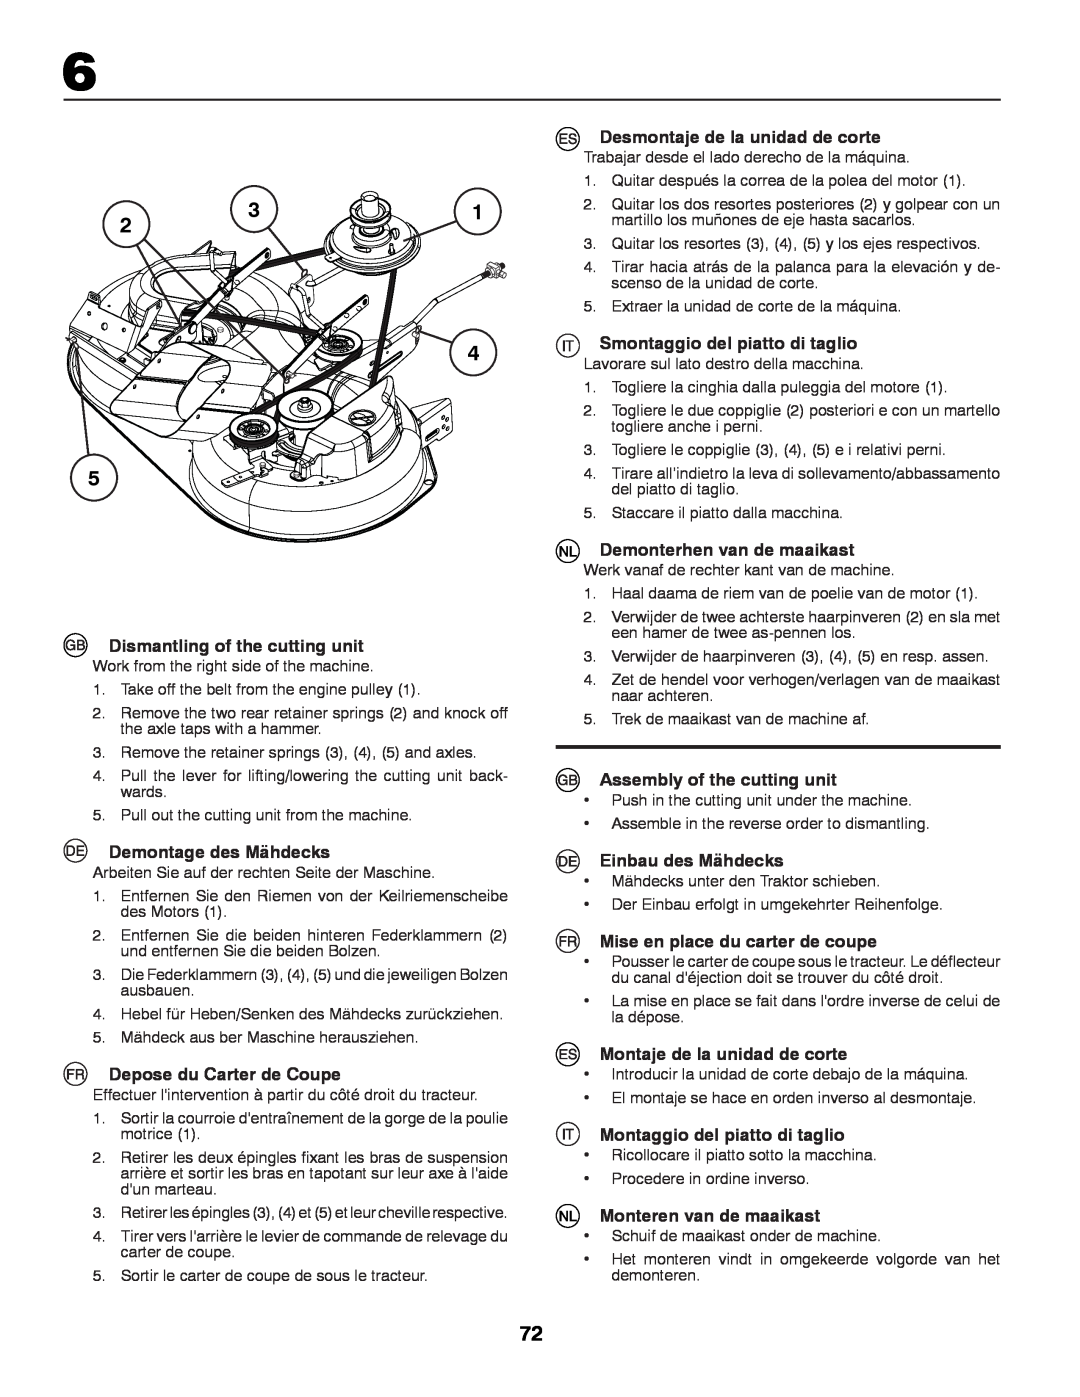 Partner Tech P12597RB instruction manual Dismantling of the cutting unit, Demontage des Mähdecks, Depose du Carter de Coupe 